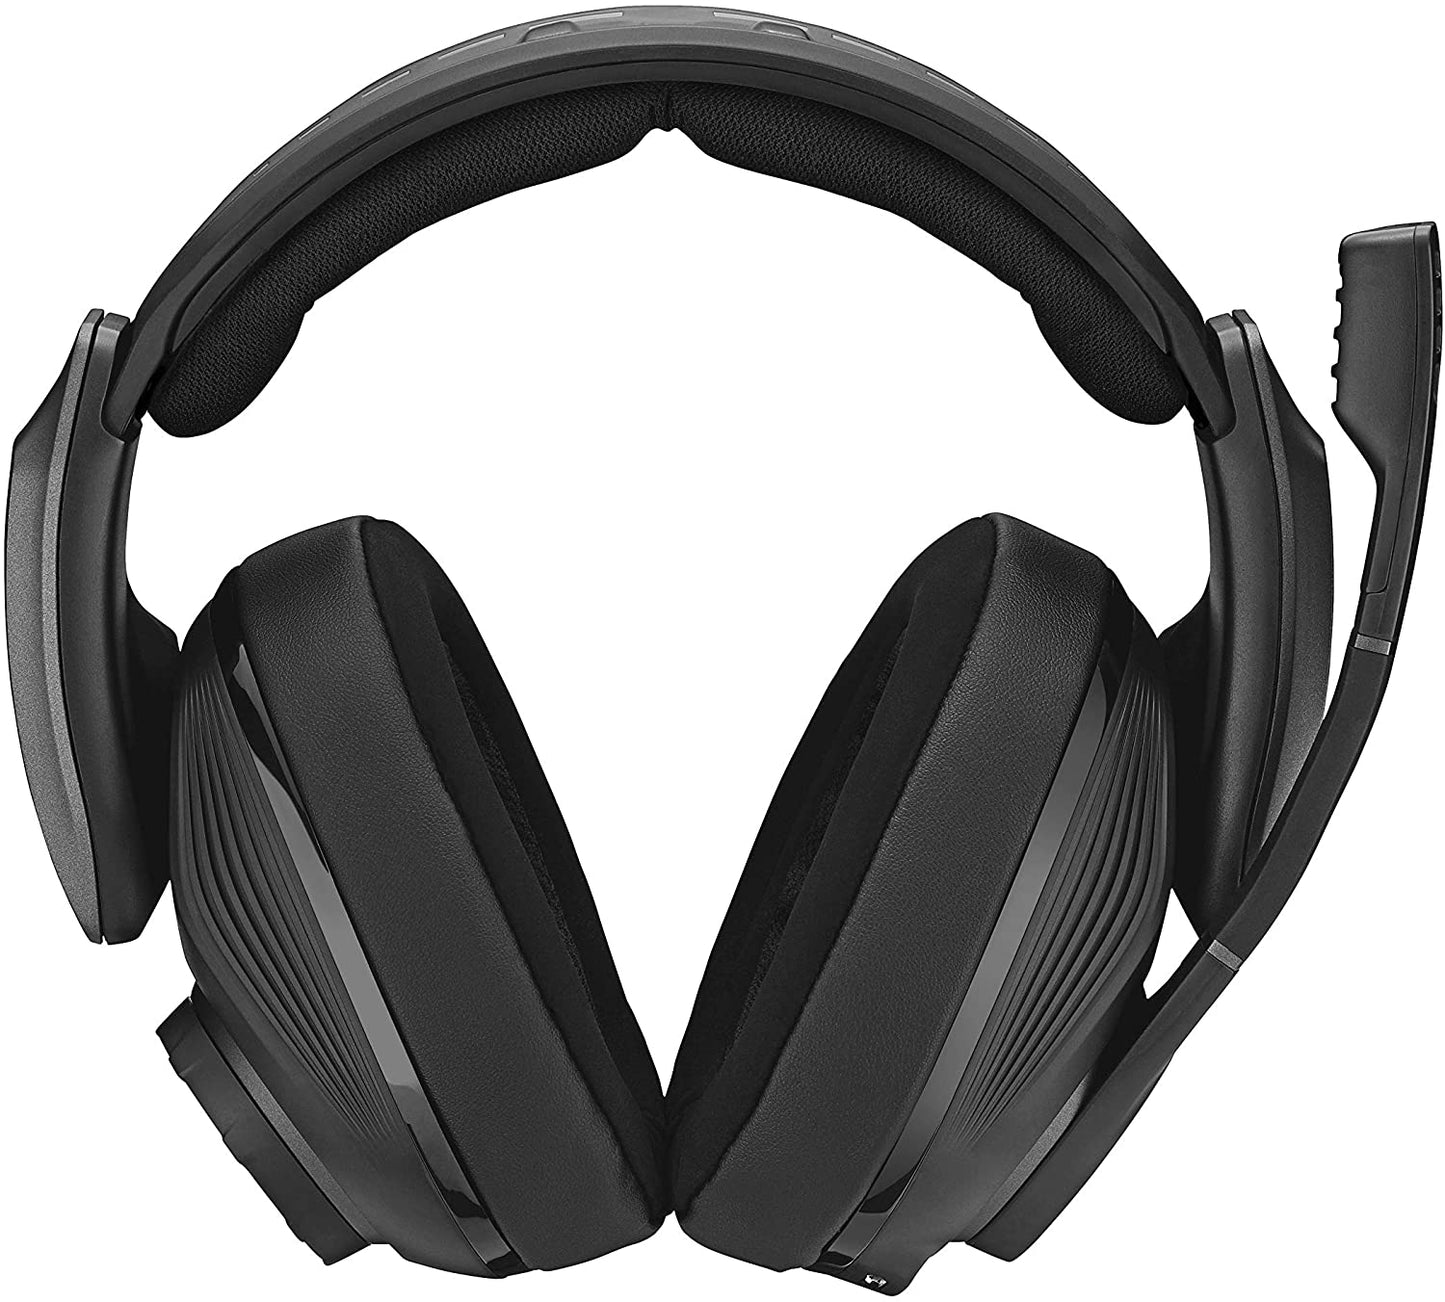 Sennheiser GSP 670 Wireless Gaming Headset Headphones